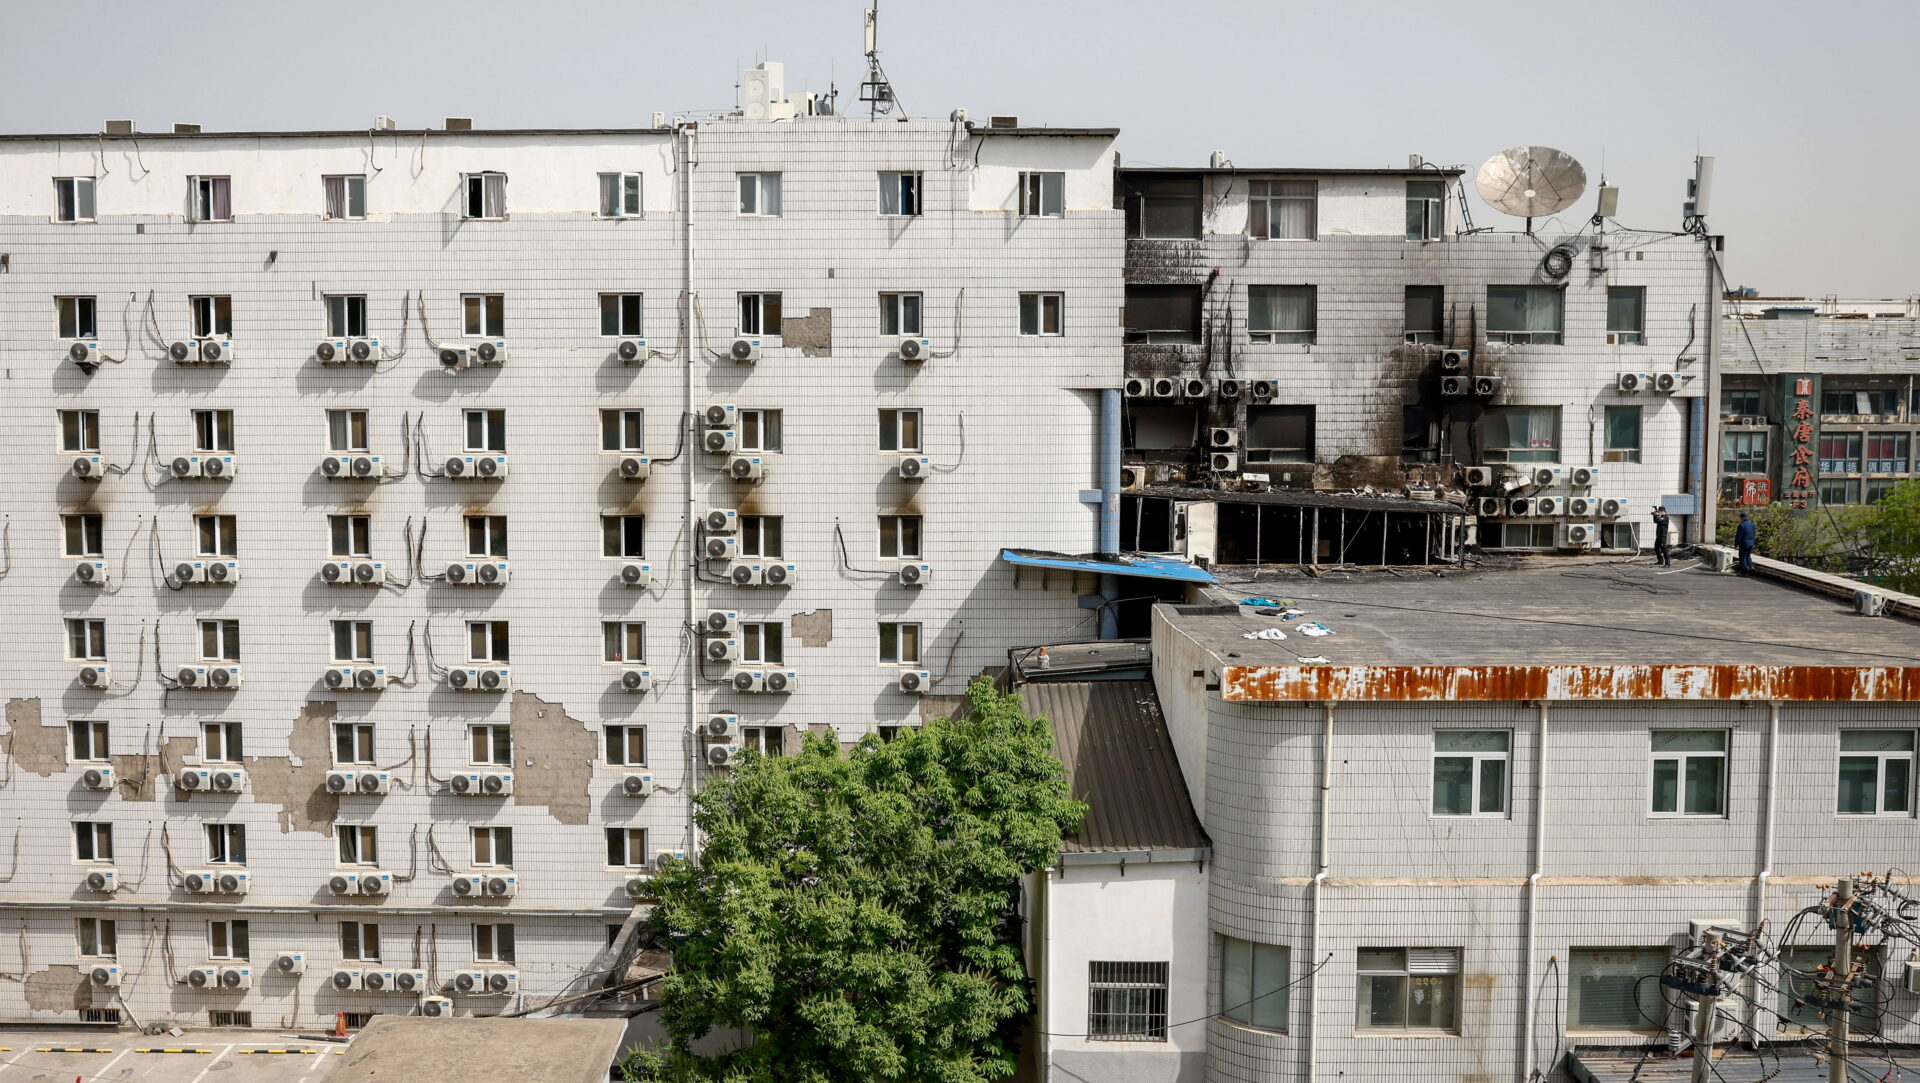 29 personas murieron en el incendio de un hospital en China; hay 12 detenidos